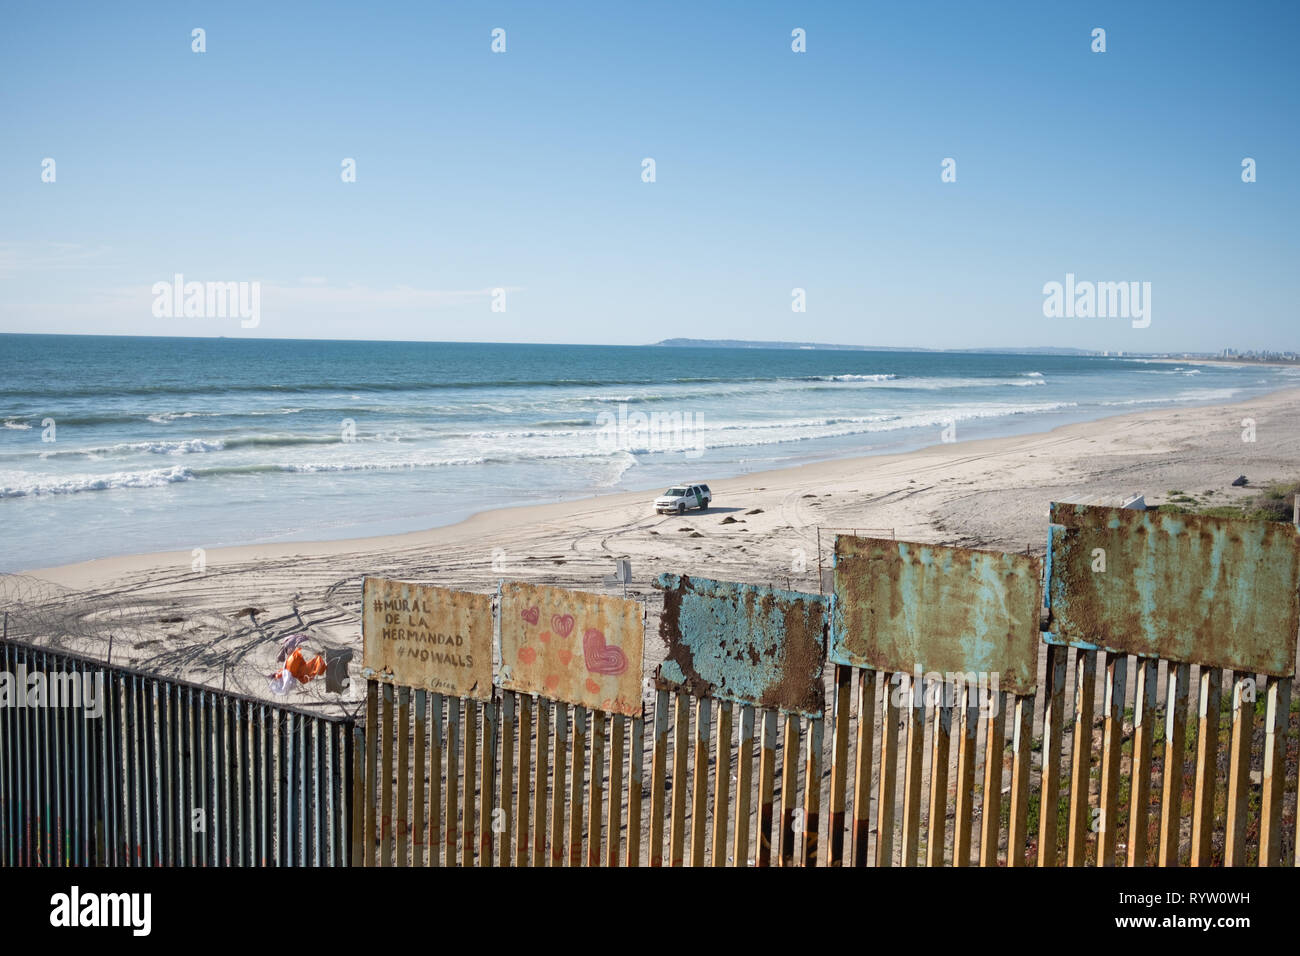 United States Border Patrol gesehen wird, blockiert der Mauer an der US-mexikanischen Grenze nach einer großen Gruppe, die durch die Mauer, die Flucht in den Vereinigten Staaten. Im Februar 2019, rund 76.000 floh aus der südlichen Grenze in die Vereinigten Staaten, um ein besseres Leben zu finden. Stockfoto